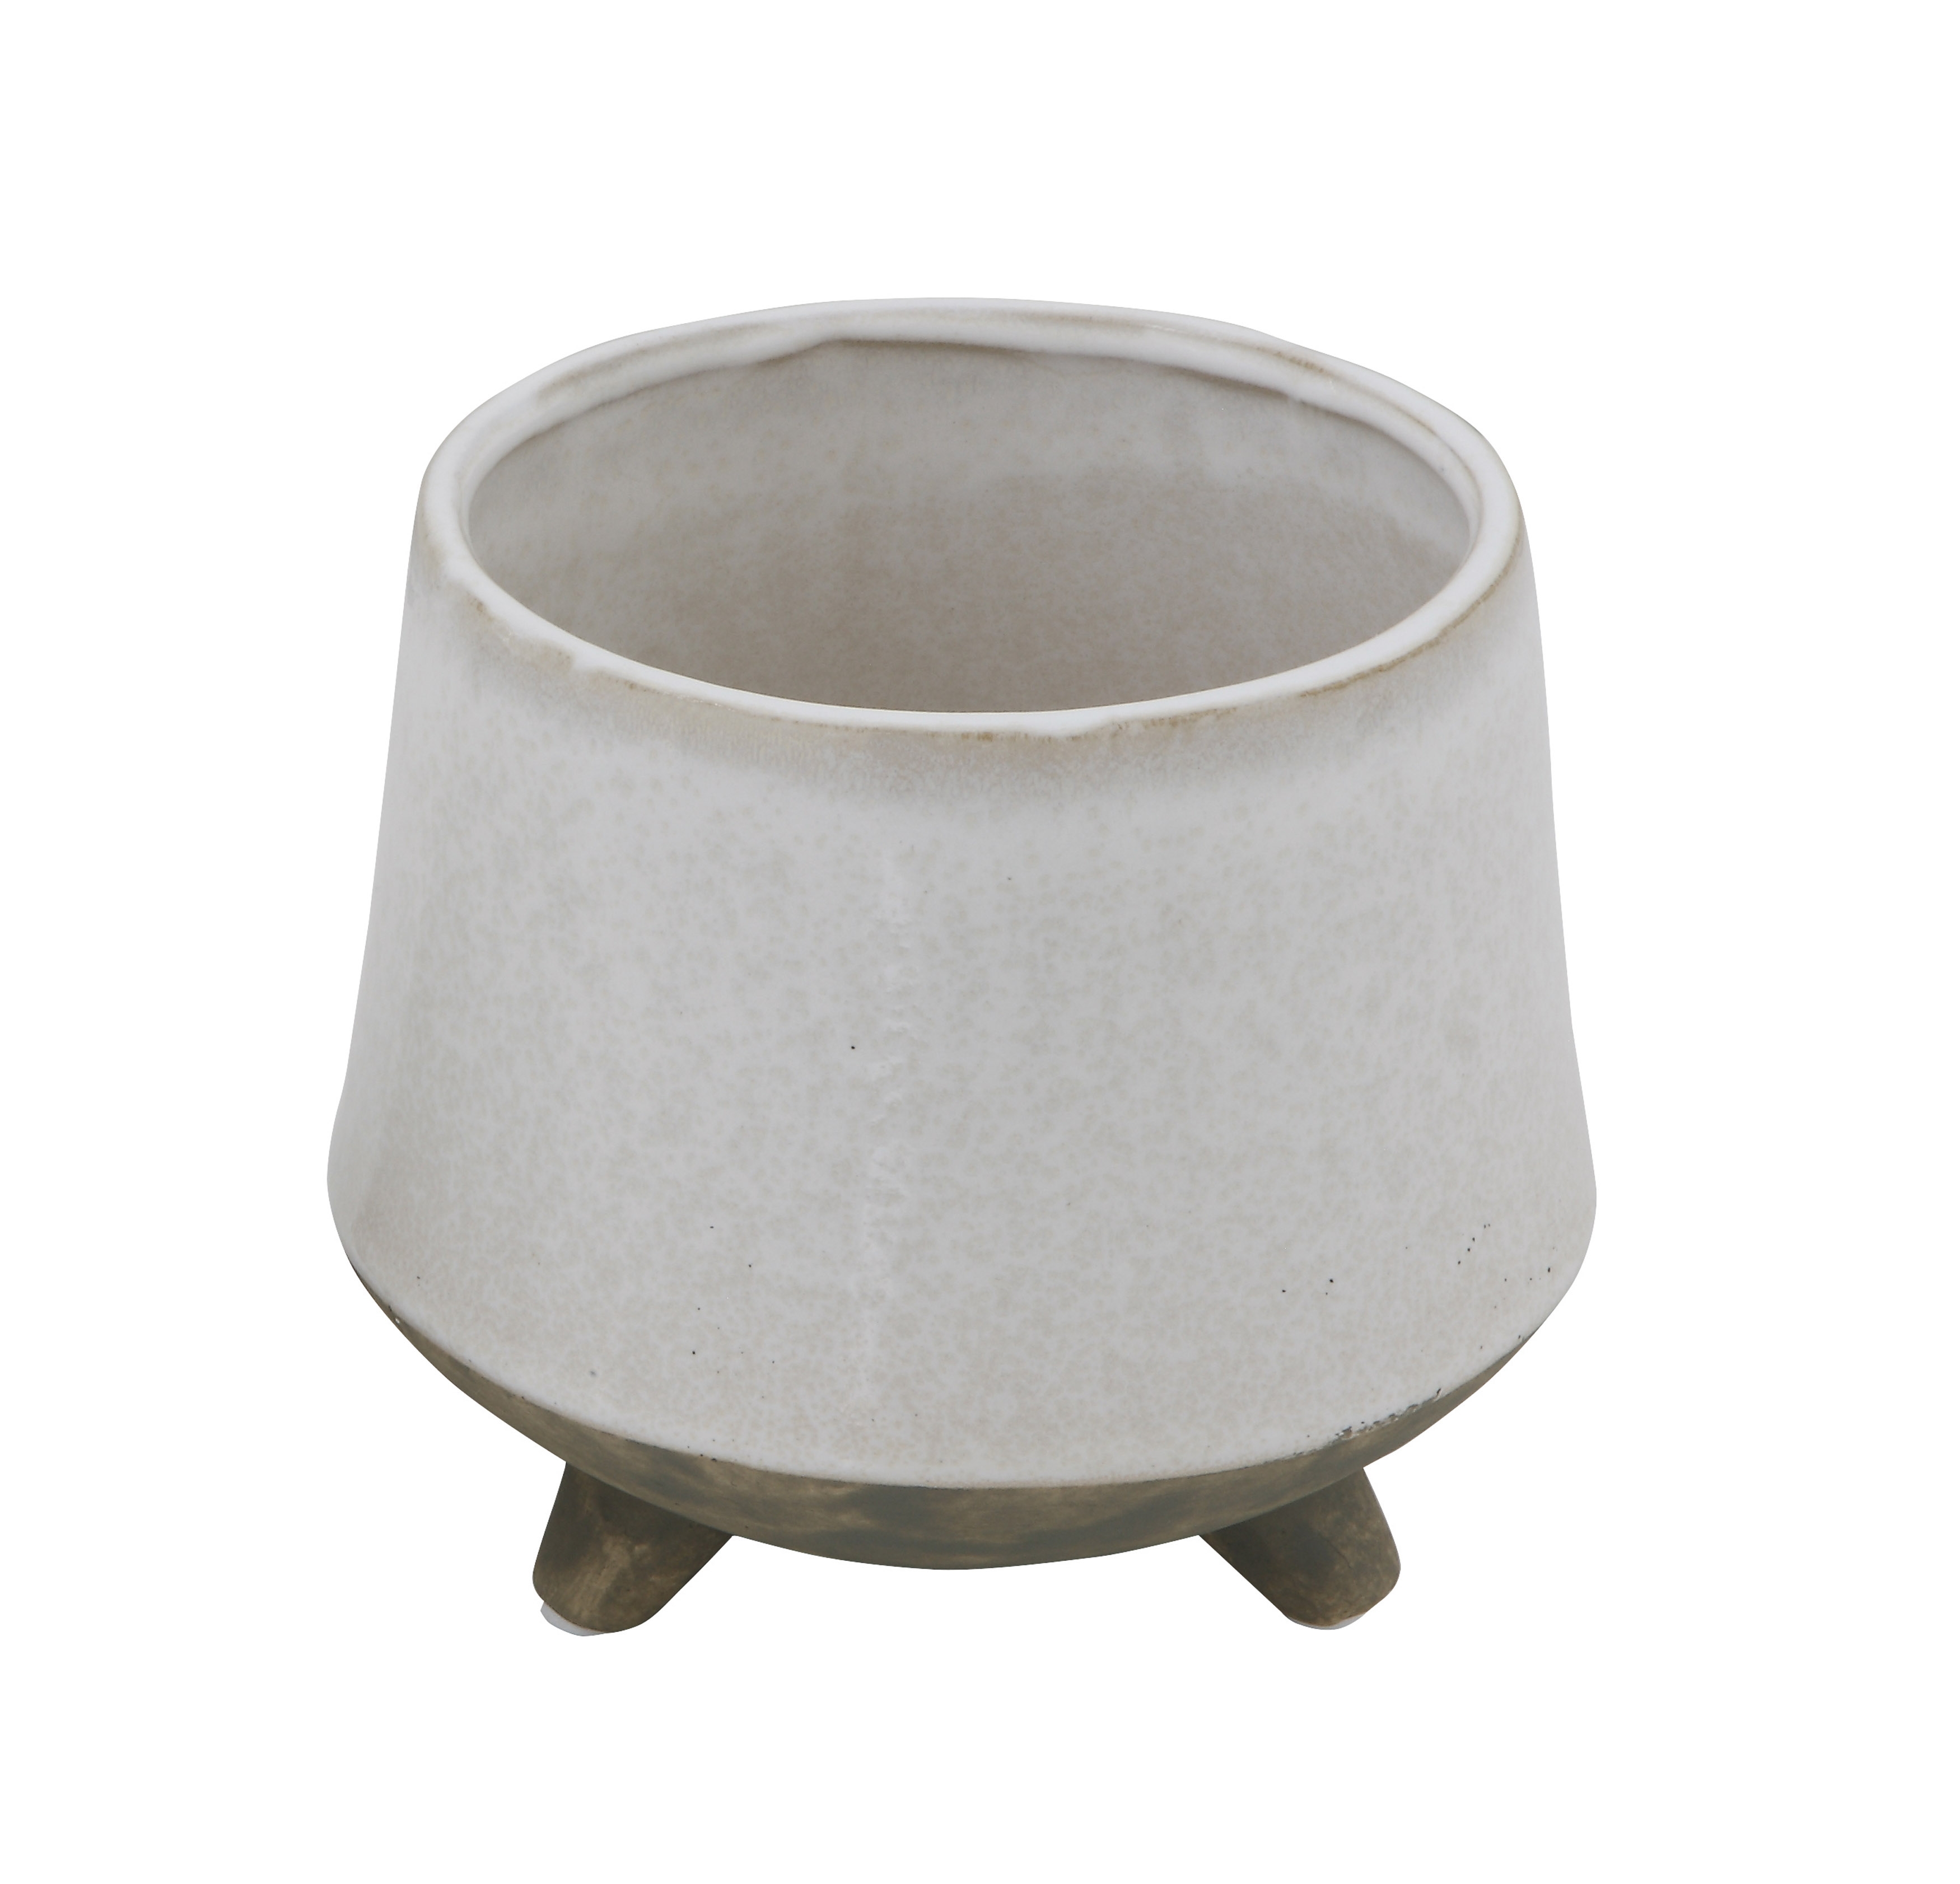 Round White Stoneware Planter with Feet - Image 0